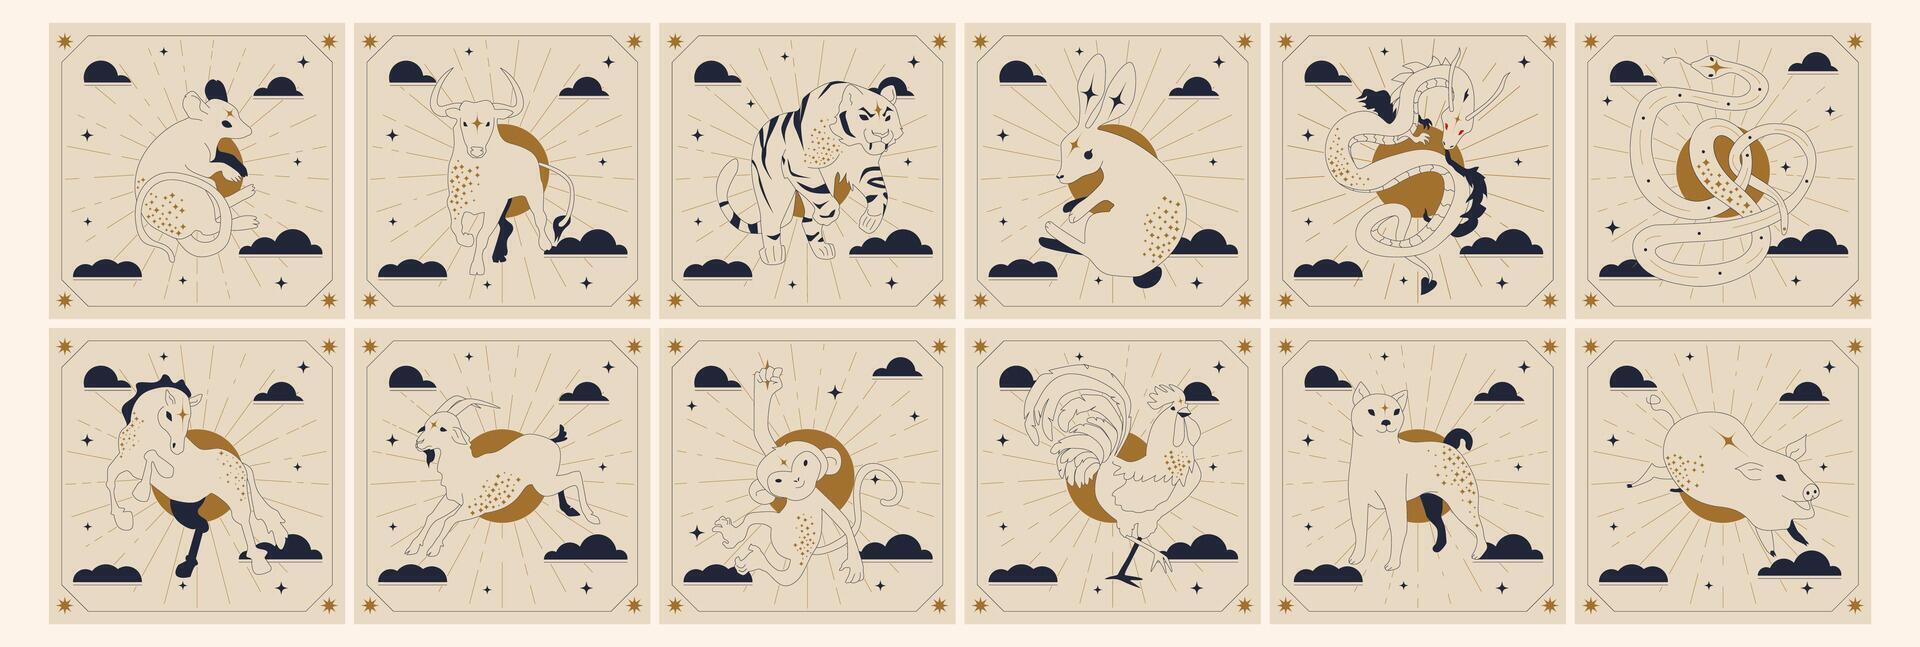 Chinesisch Neu Jahr Horoskop Tiere. Hand gezeichnet Vektor Illustration.